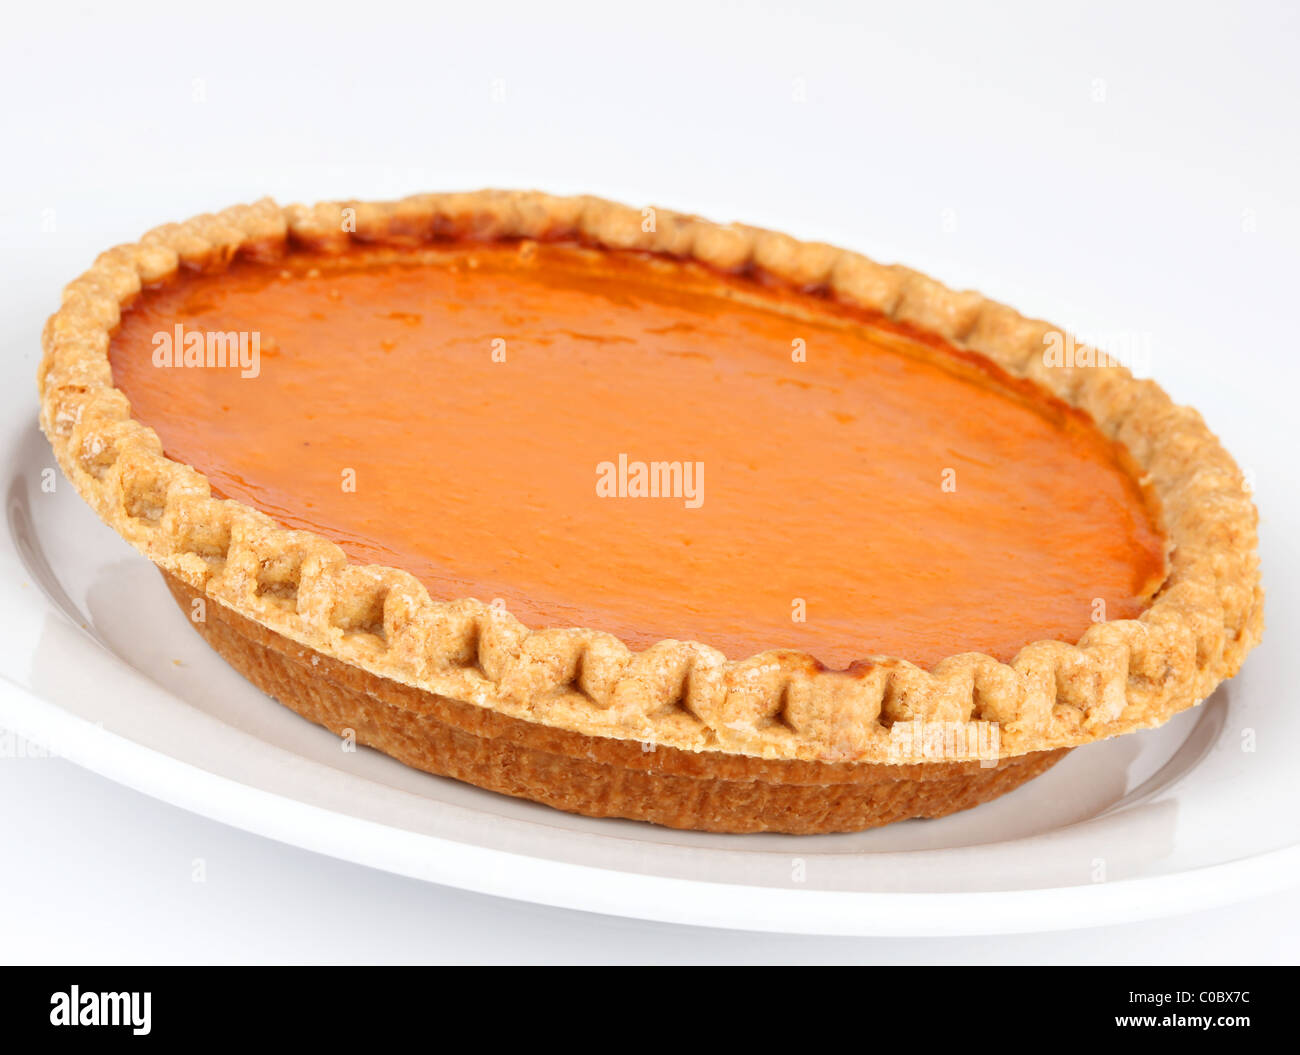 Pumpkin and sweet potato pie on white background Stock Photo